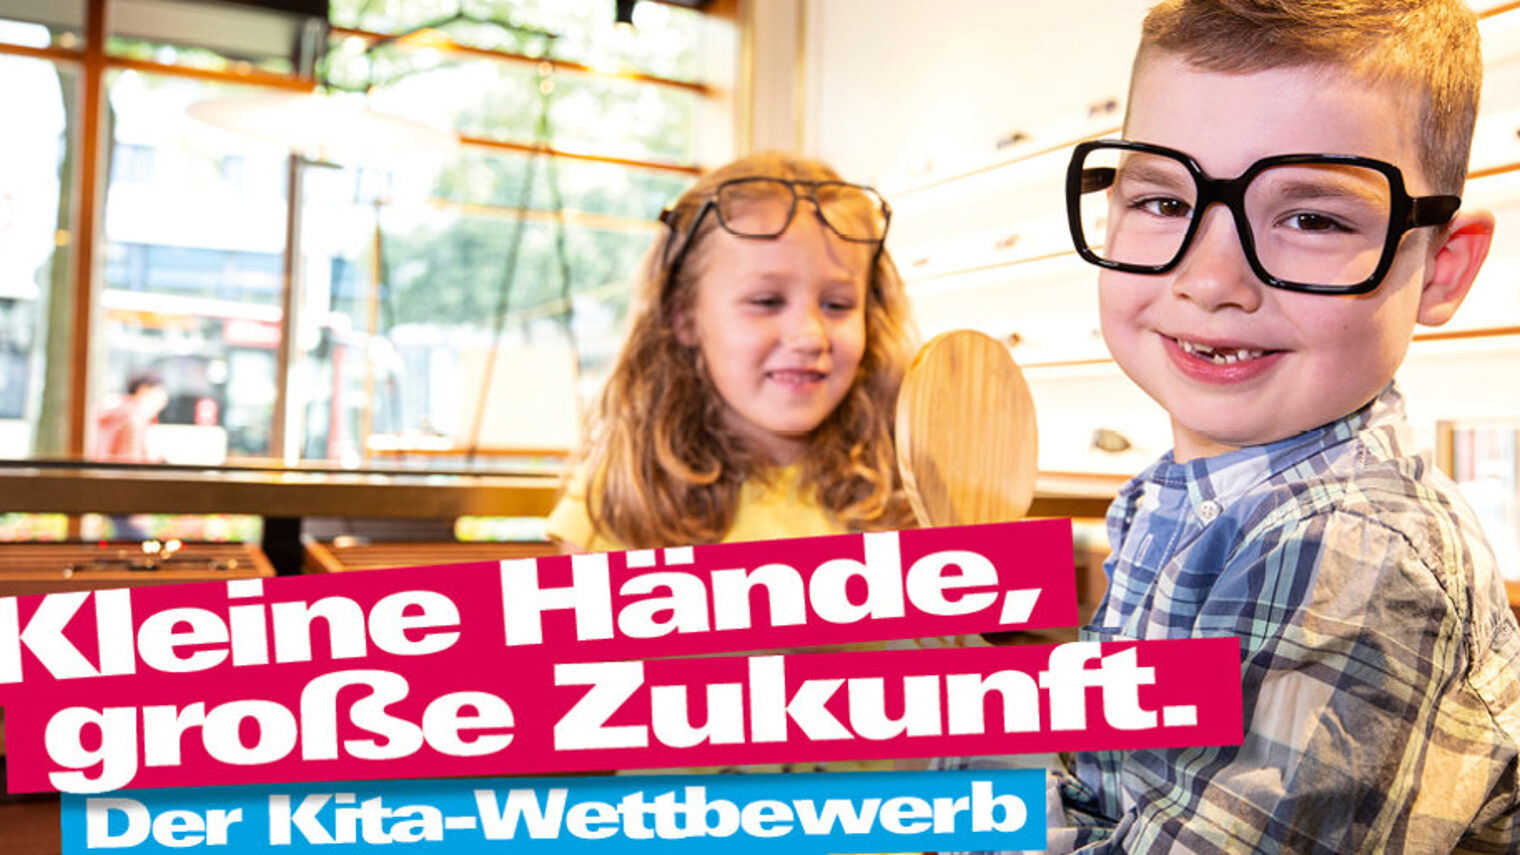 Zwei Kinder probieren in einem Augenoptiker-Geschäft Brillen, Schriftzug "Kleine Hände, große Zukunft. Der Kita-Wettbewerb"